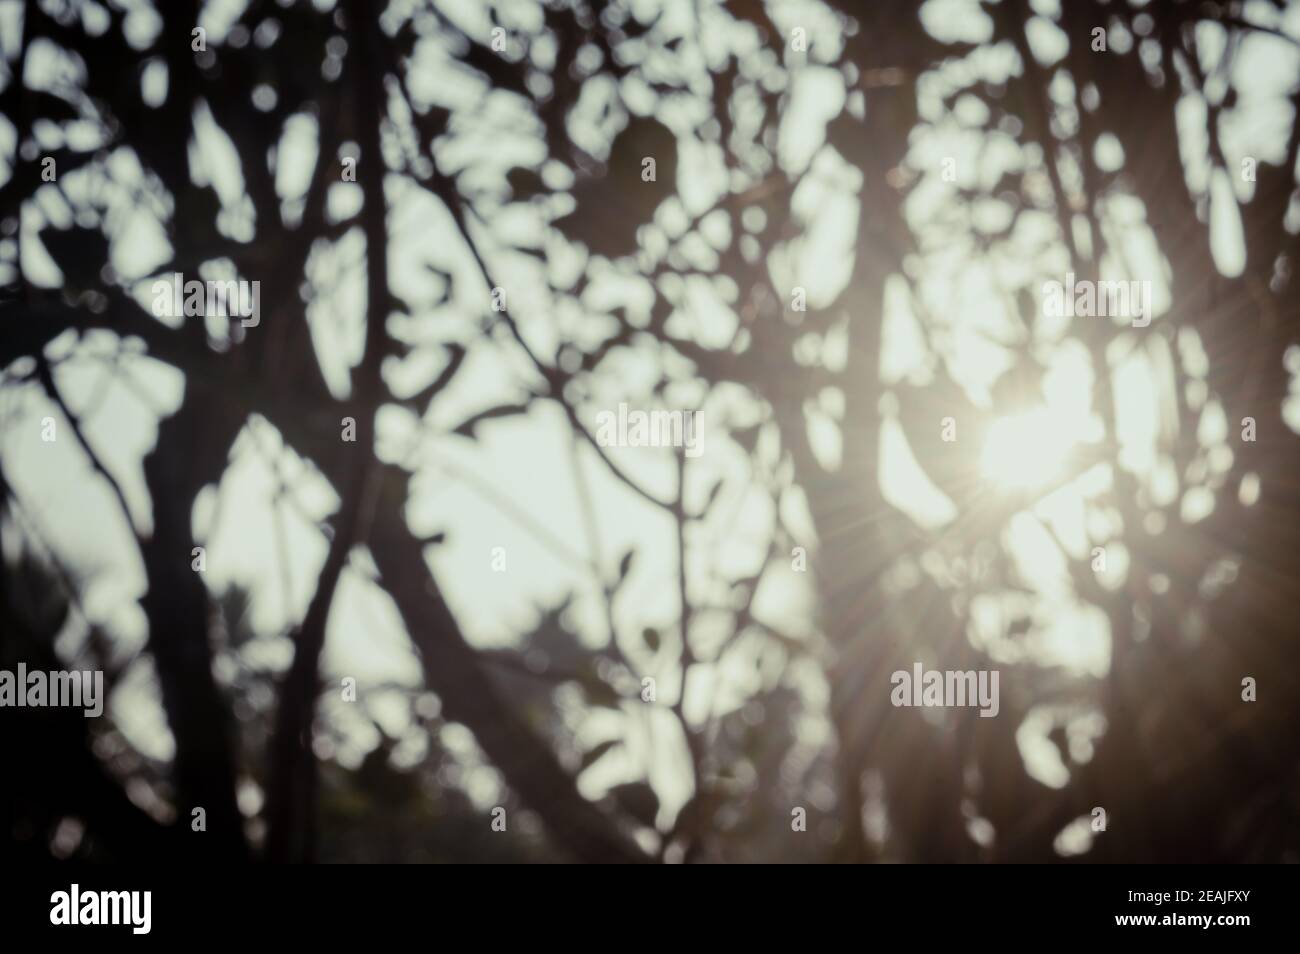 Mattina luce del sole attraverso le foglie dell'albero. Blur Forest Bush terreno boscoso nella silhouette in primo piano da luce posteriore chiaro fascio di sole. Bellezza nella natura Abstract tema immagine di sfondo. Spazio di copia. Foto Stock